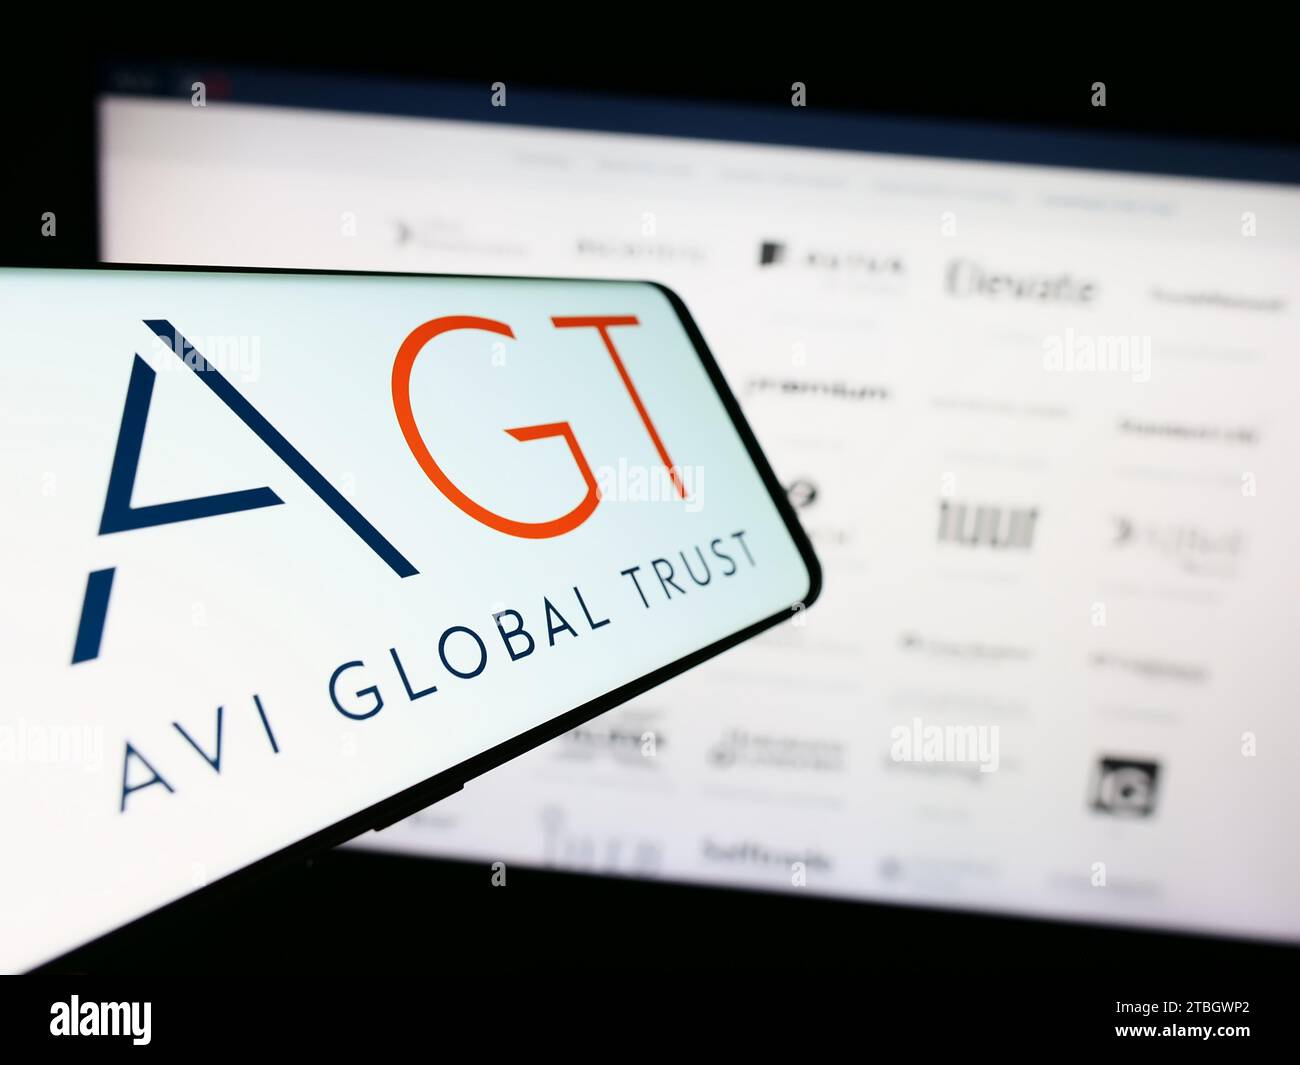 Cellulare con logo della società di investimento britannica AVI Global Trust plc (AGT) davanti al sito Web aziendale. Concentrarsi sul centro del display del telefono. Foto Stock